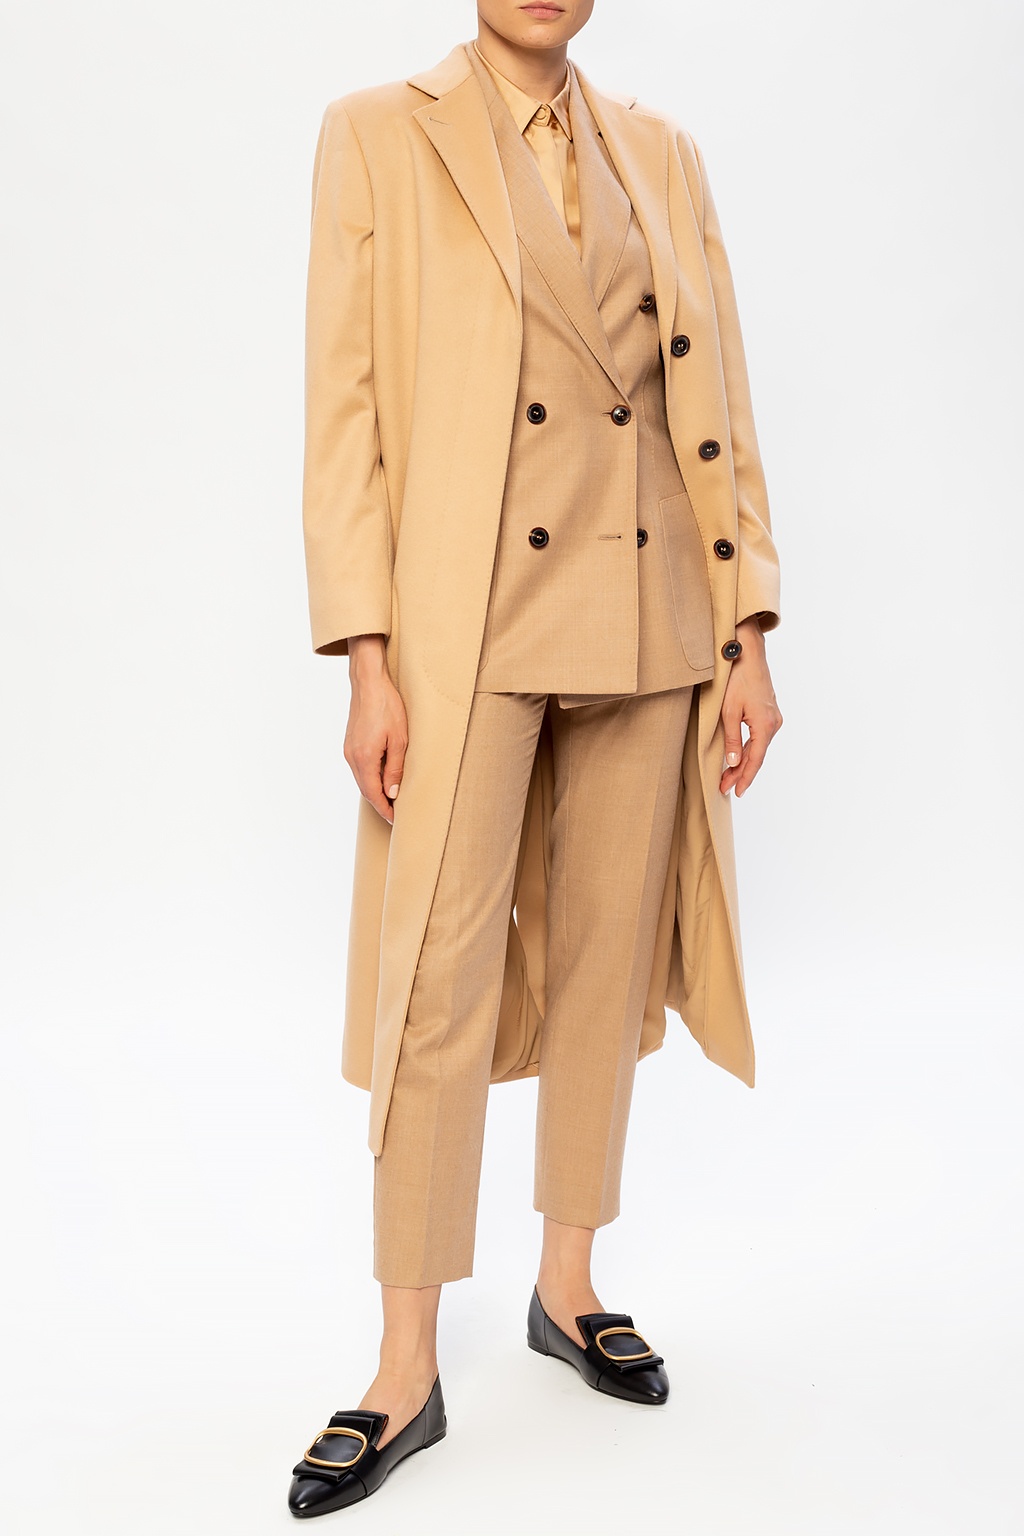 Women's Jacket Blazer Double Petto Casual Belt Elegant – LE STYLE DE PARIS